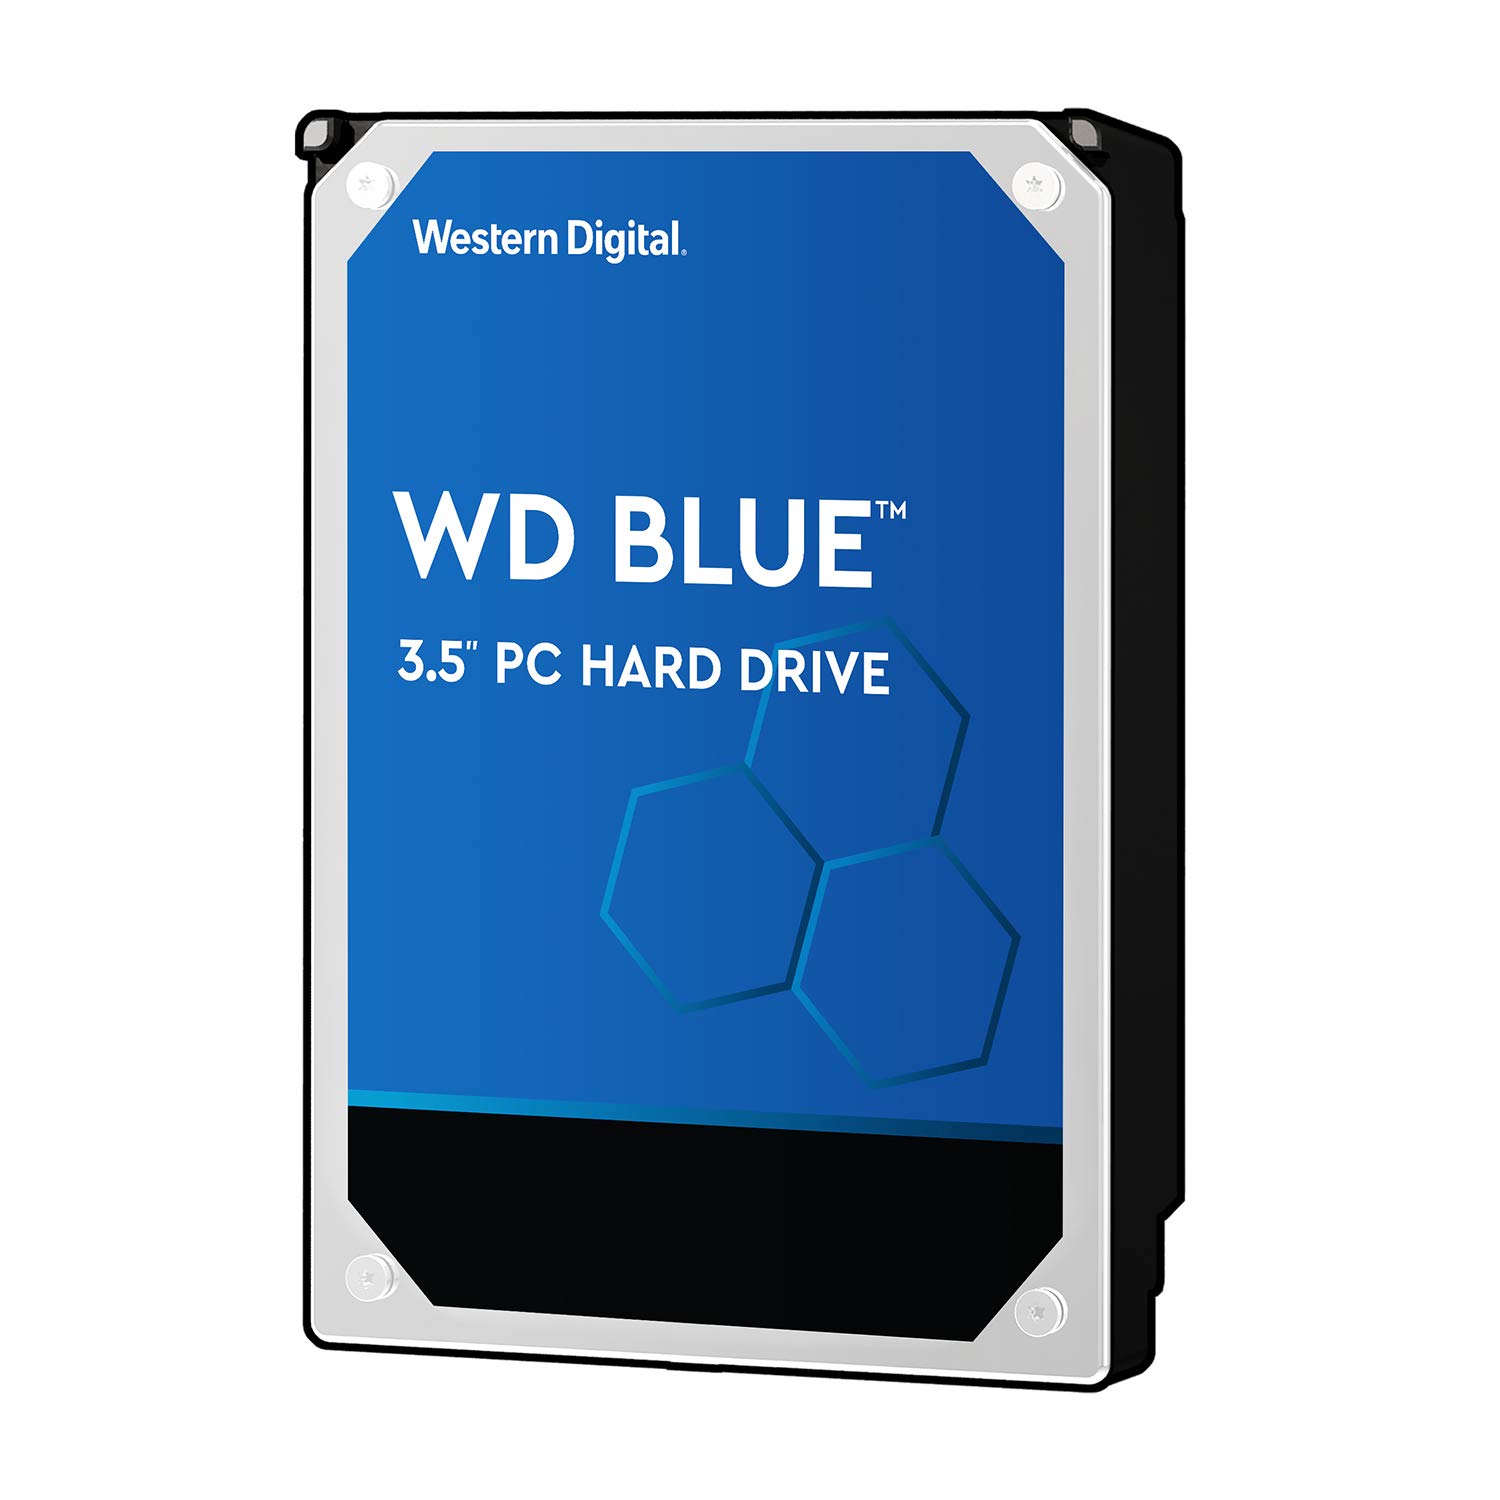 Western Digital HDD 500GB WD Blue PC 3.5インチ 内蔵HDD WD5000AZLX 国内正規代理店品